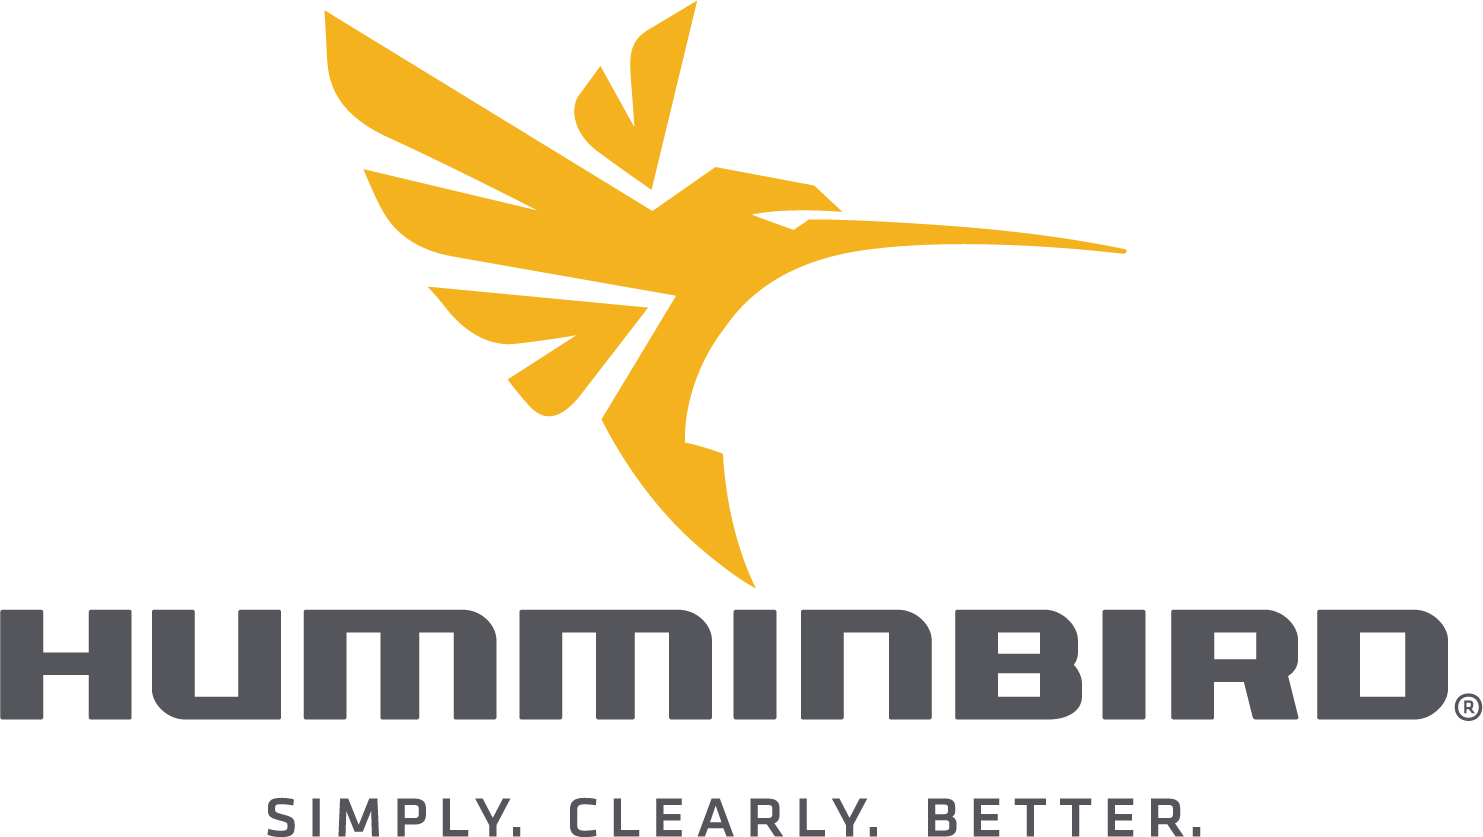 Brand: Humminbird